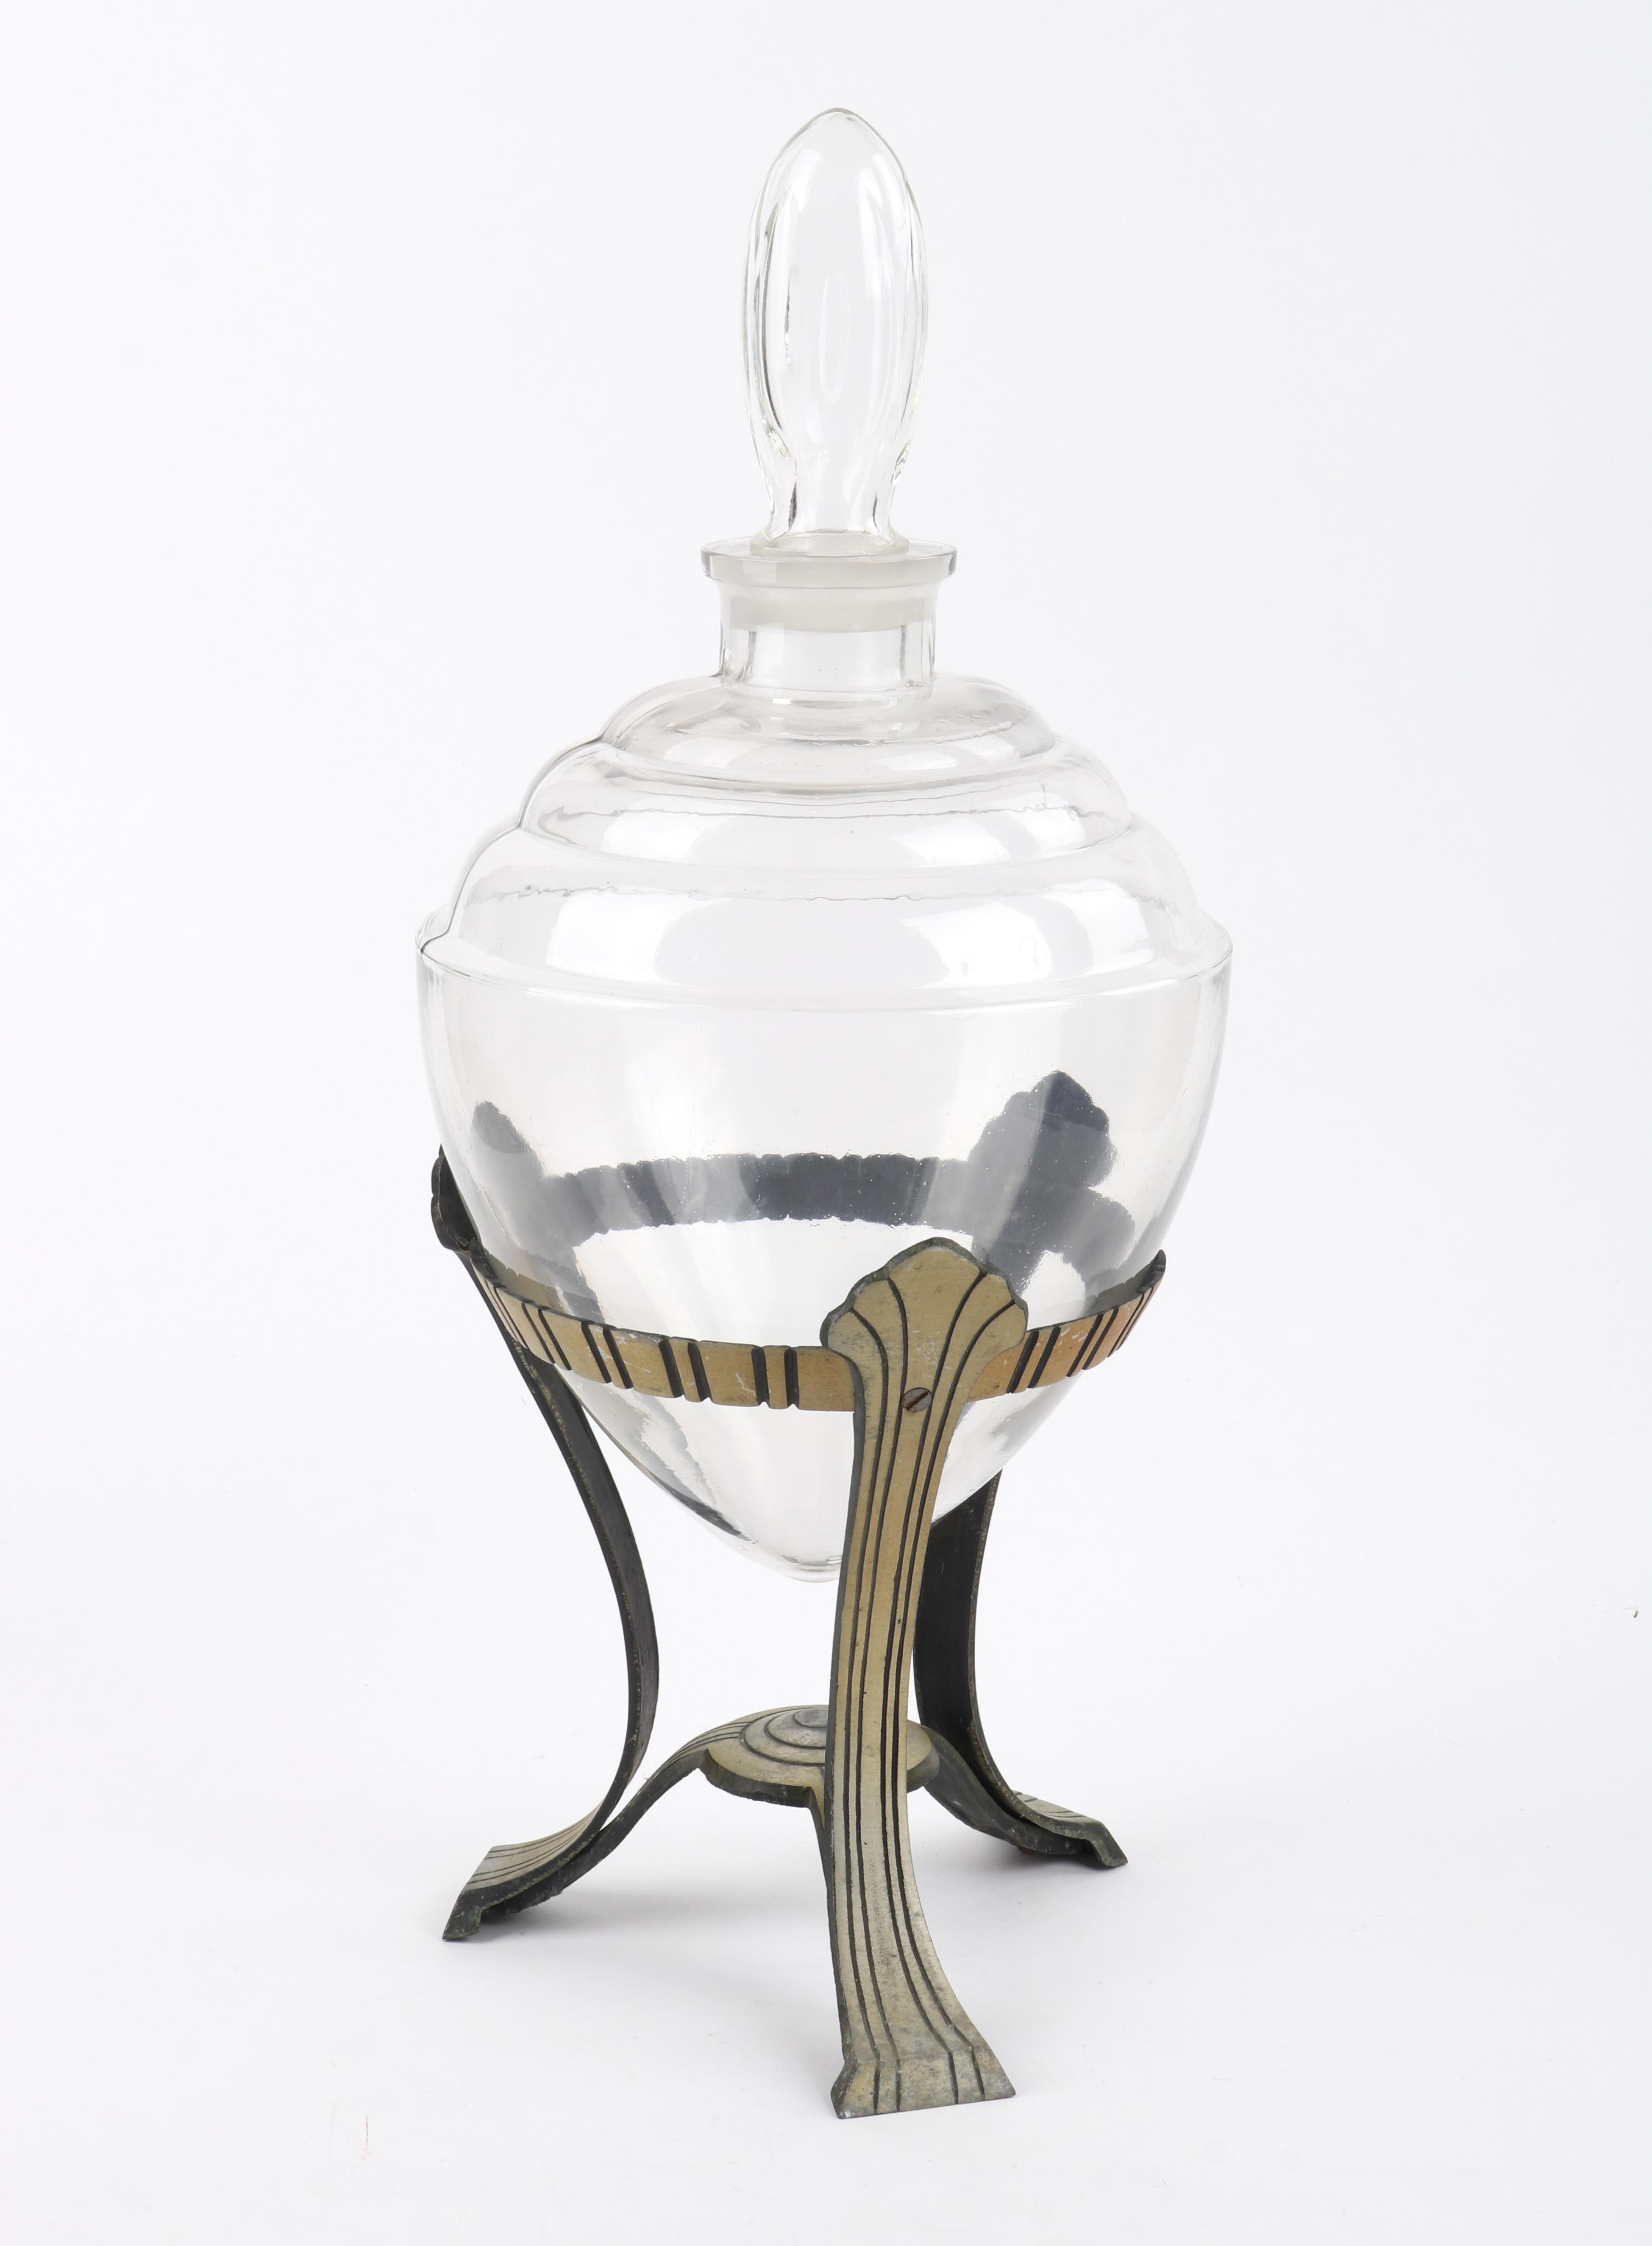 Riesige, antike, schwere Glasurne/Apothekenglas, mit Deckel und Metallständer. Wunderschönes Art-Déco-Dekorationsstück, das auf vielfältige Weise verwendet werden kann: zur Präsentation von Kräutern und Pflanzen oder zur Beduftung eines ganzen